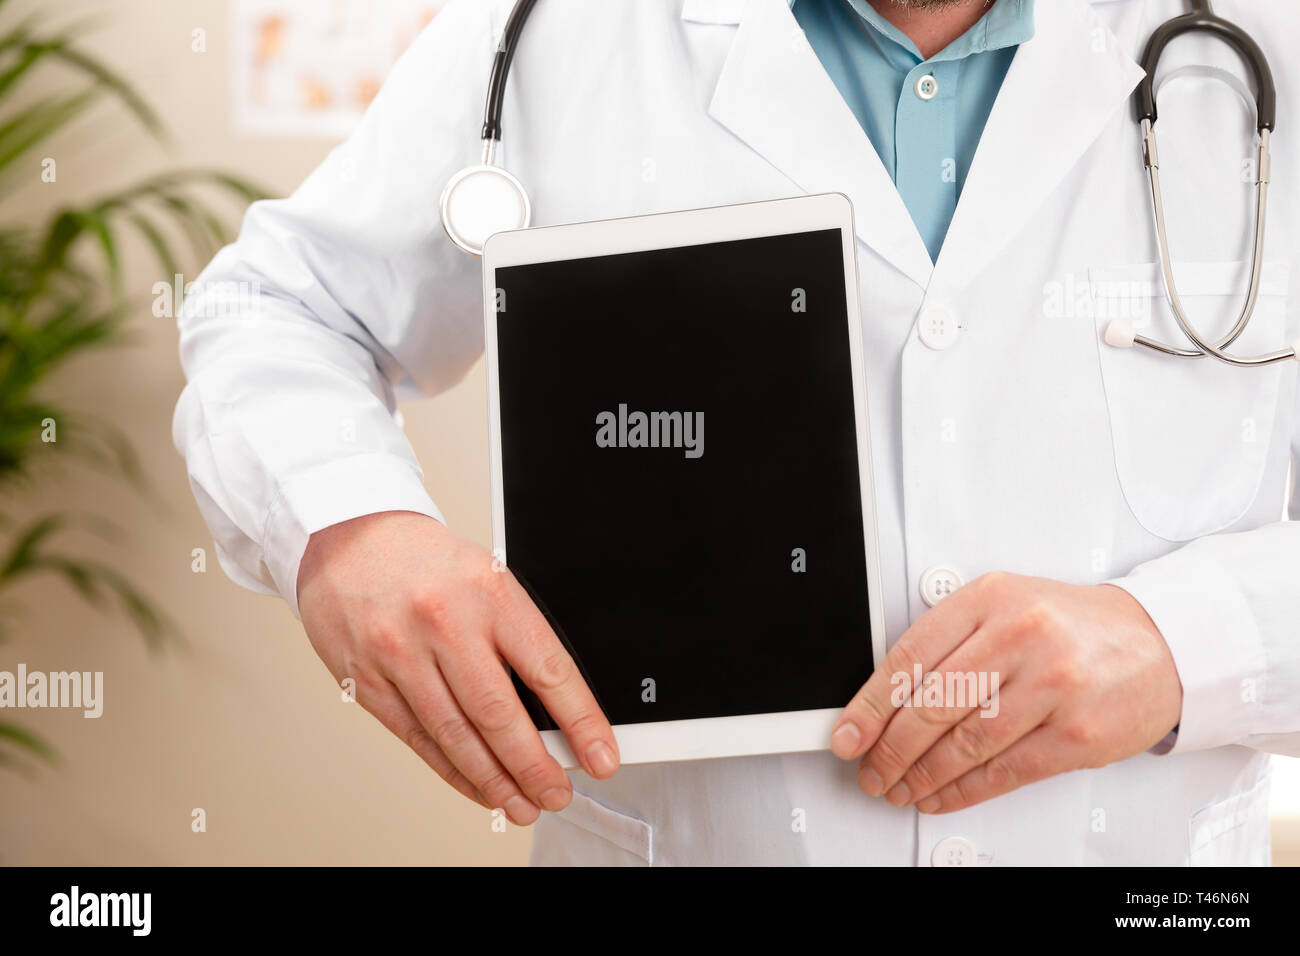 Des profils médecin homme montrant une image numérique ou d'un rapport sur une tablette Banque D'Images